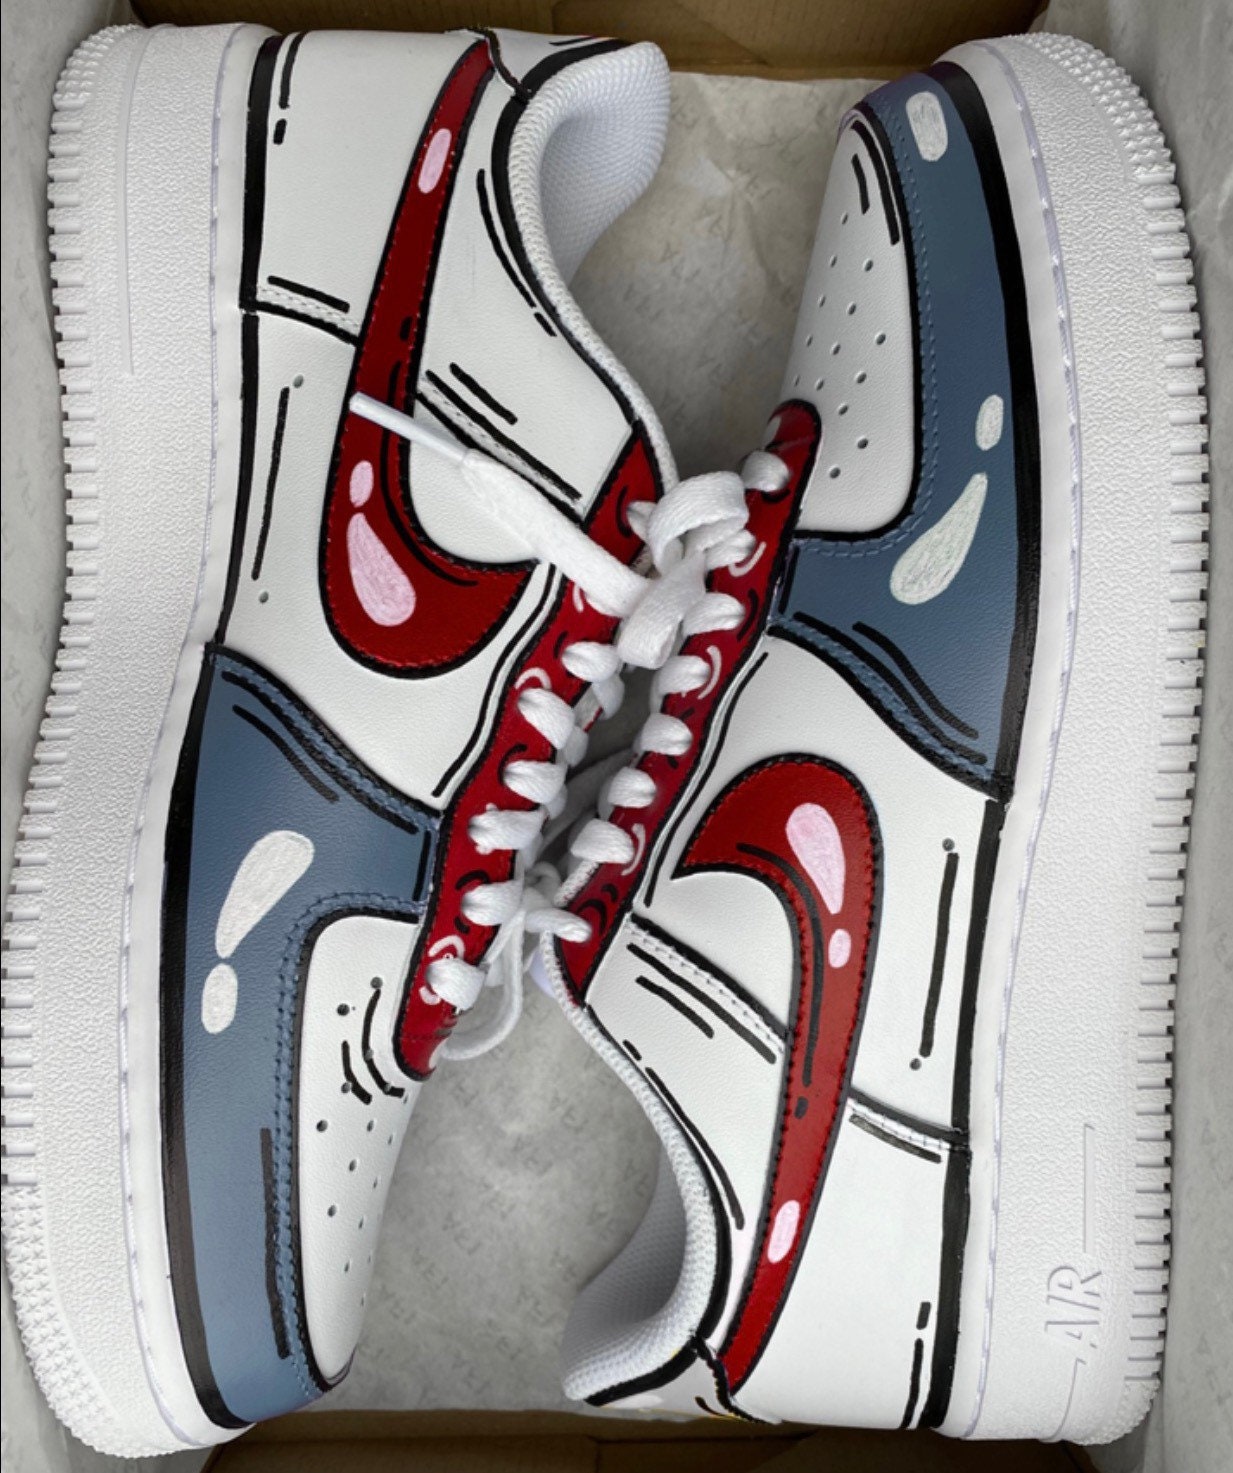 Niet ingewikkeld fort ziekte Nike Air Force 1 X Red and Grey Cartoon Custom Sneakers. - Etsy